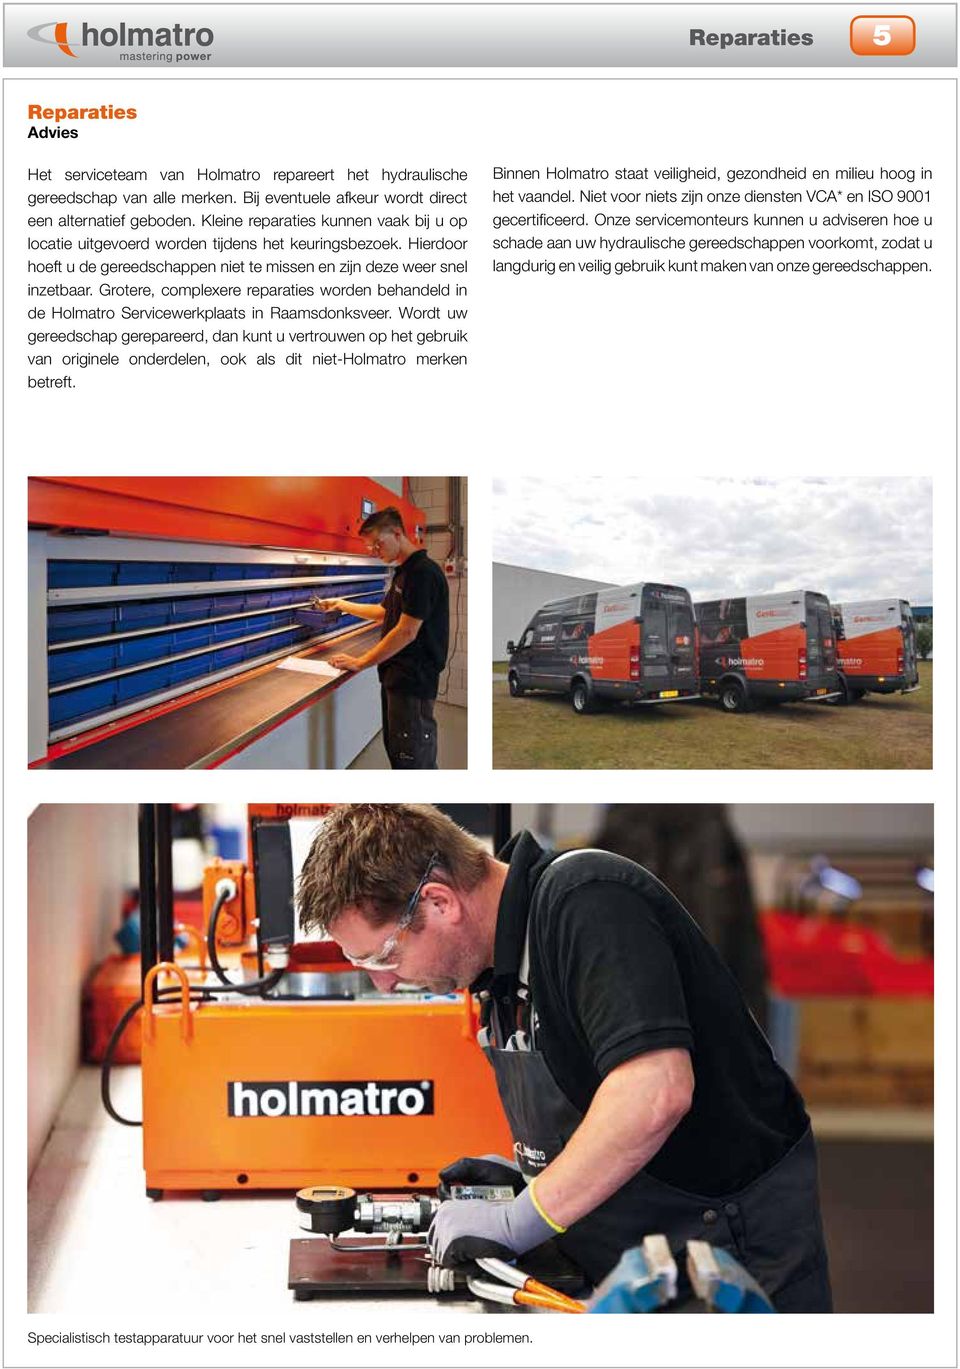 Grotere, complexere reparaties worden behandeld in de Holmatro Servicewerkplaats in Raamsdonksveer.